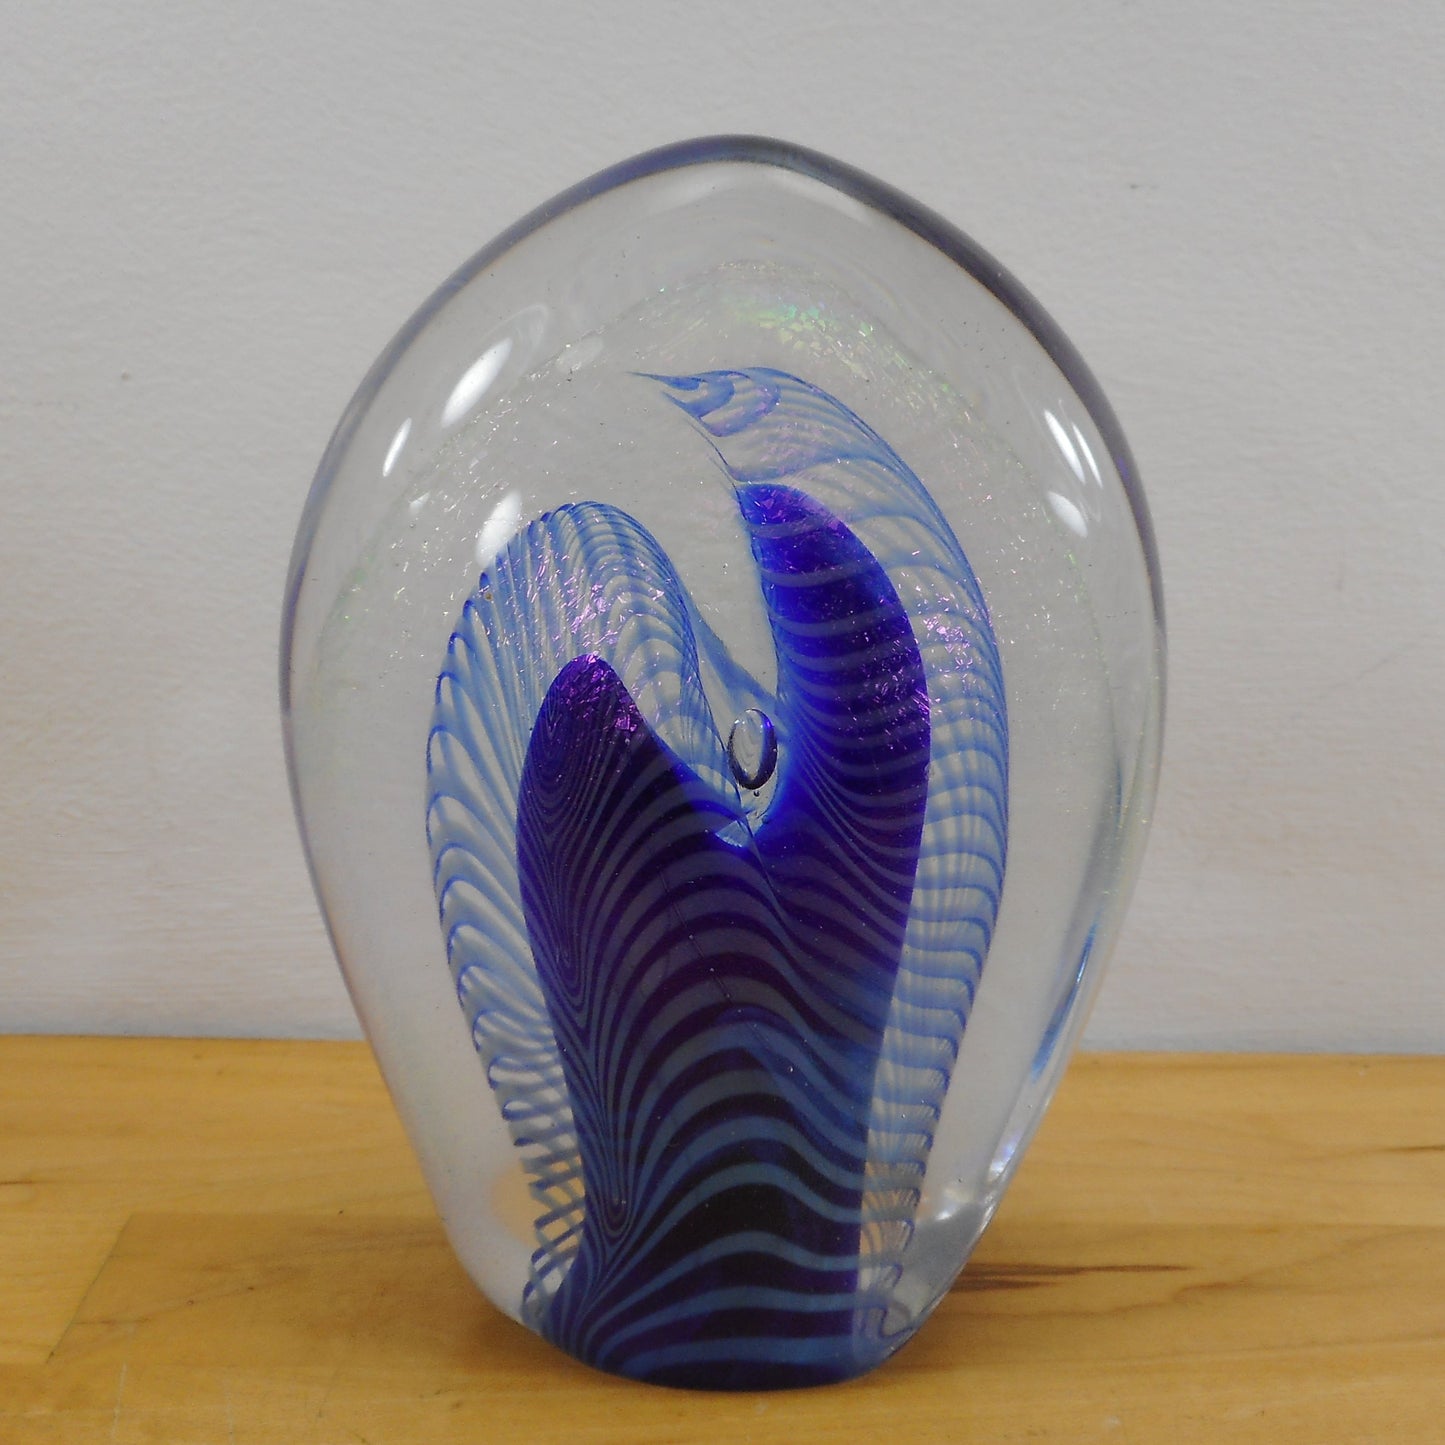 Robert Eickholt Signed 1983 Iridescent Art Glass Paperweight - Large 6"